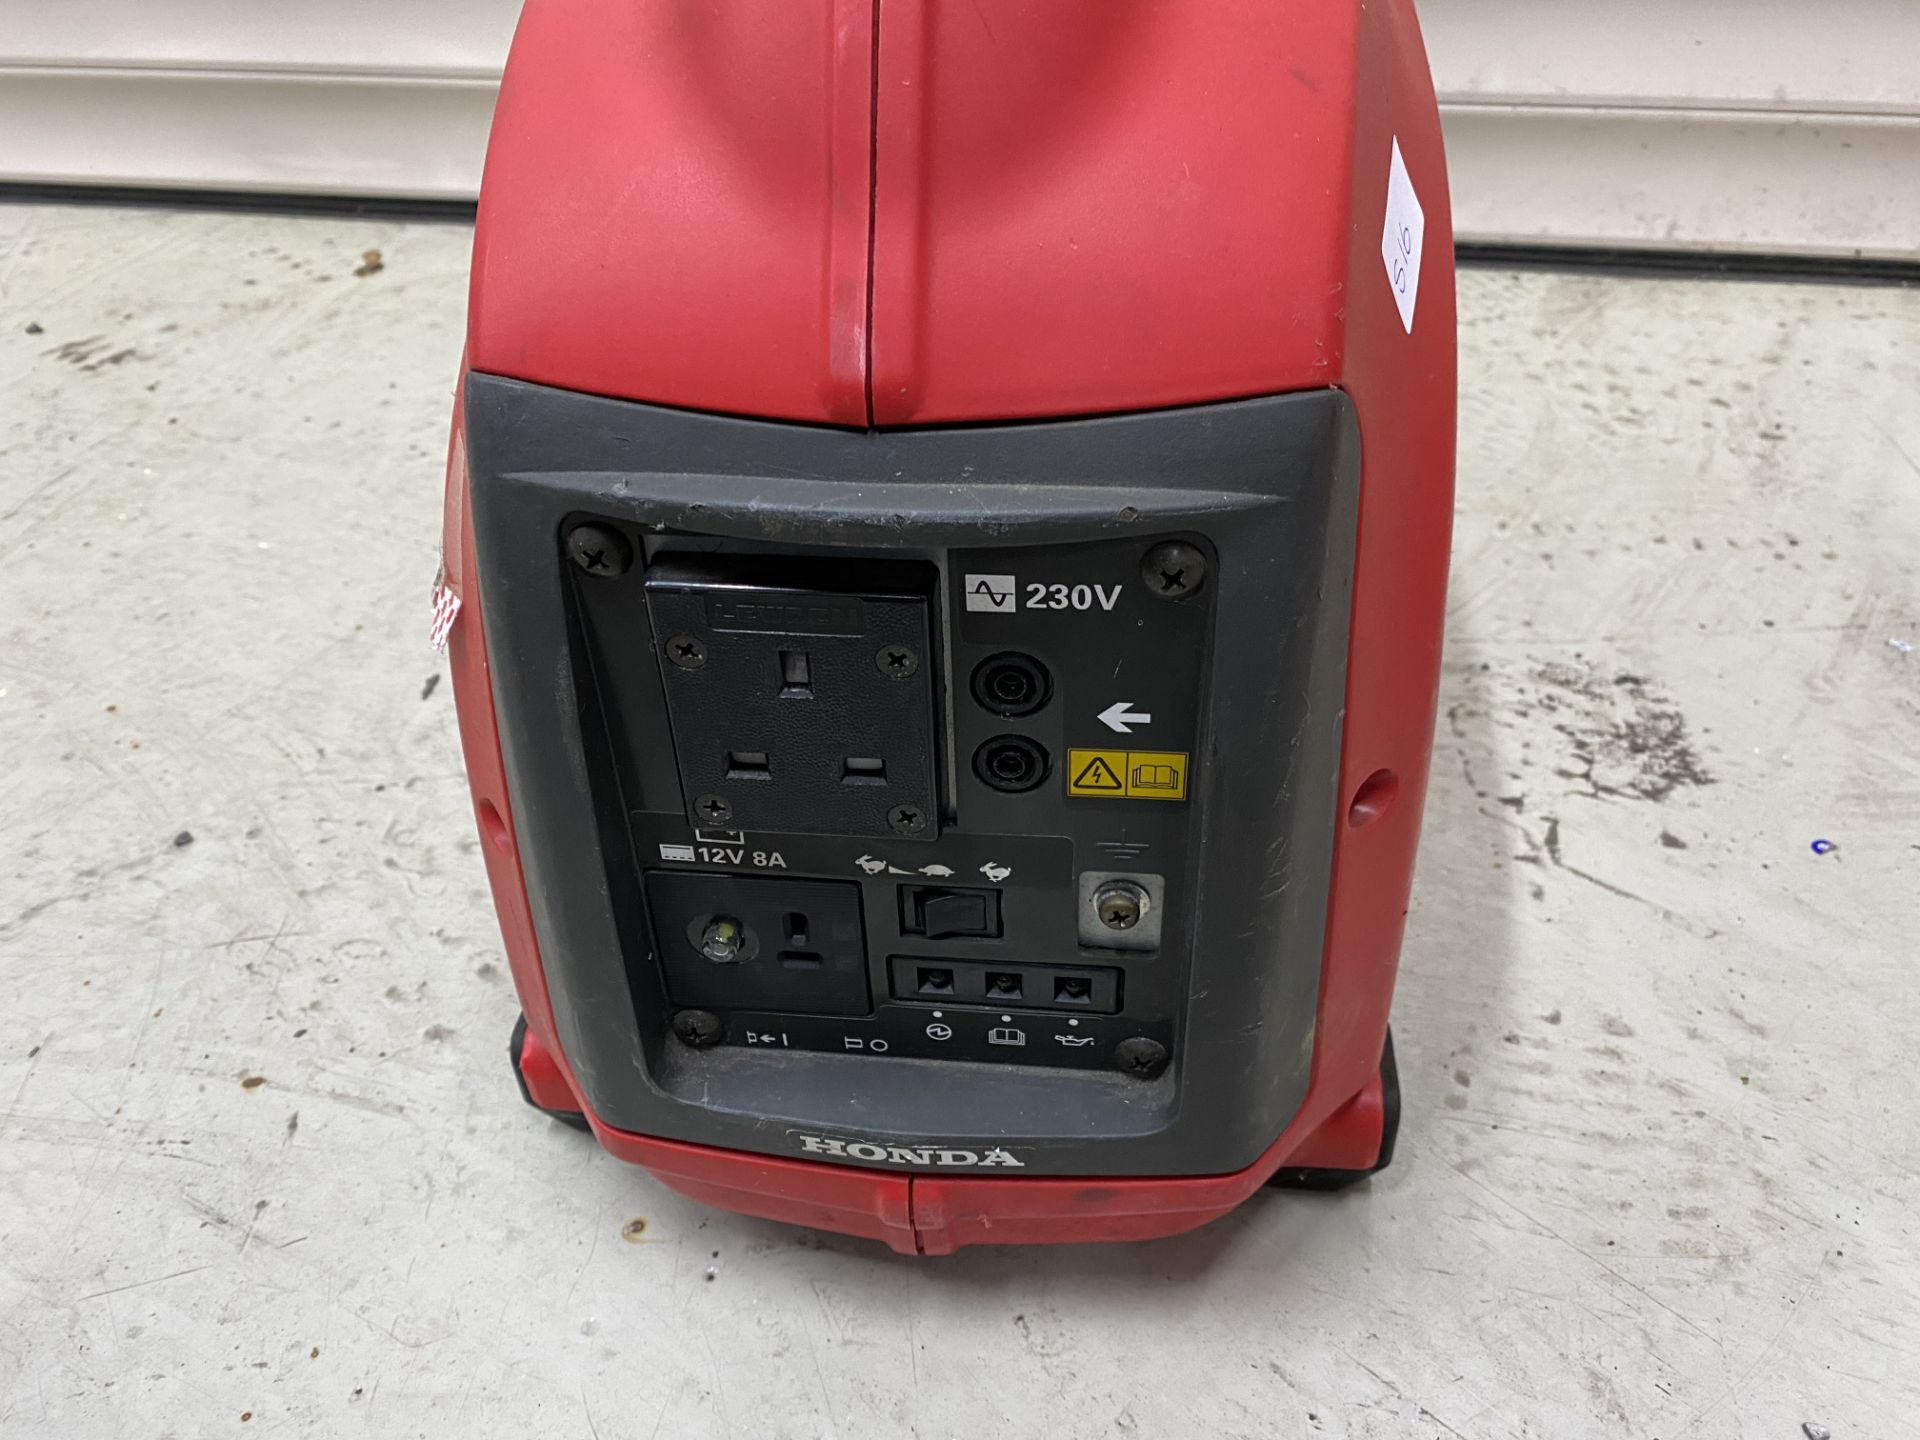 Honda EU Inverter 10i portable petrol generator, 0.9kw, 230 volts. S/No. EZGA 3035883. (2000). - Image 2 of 4